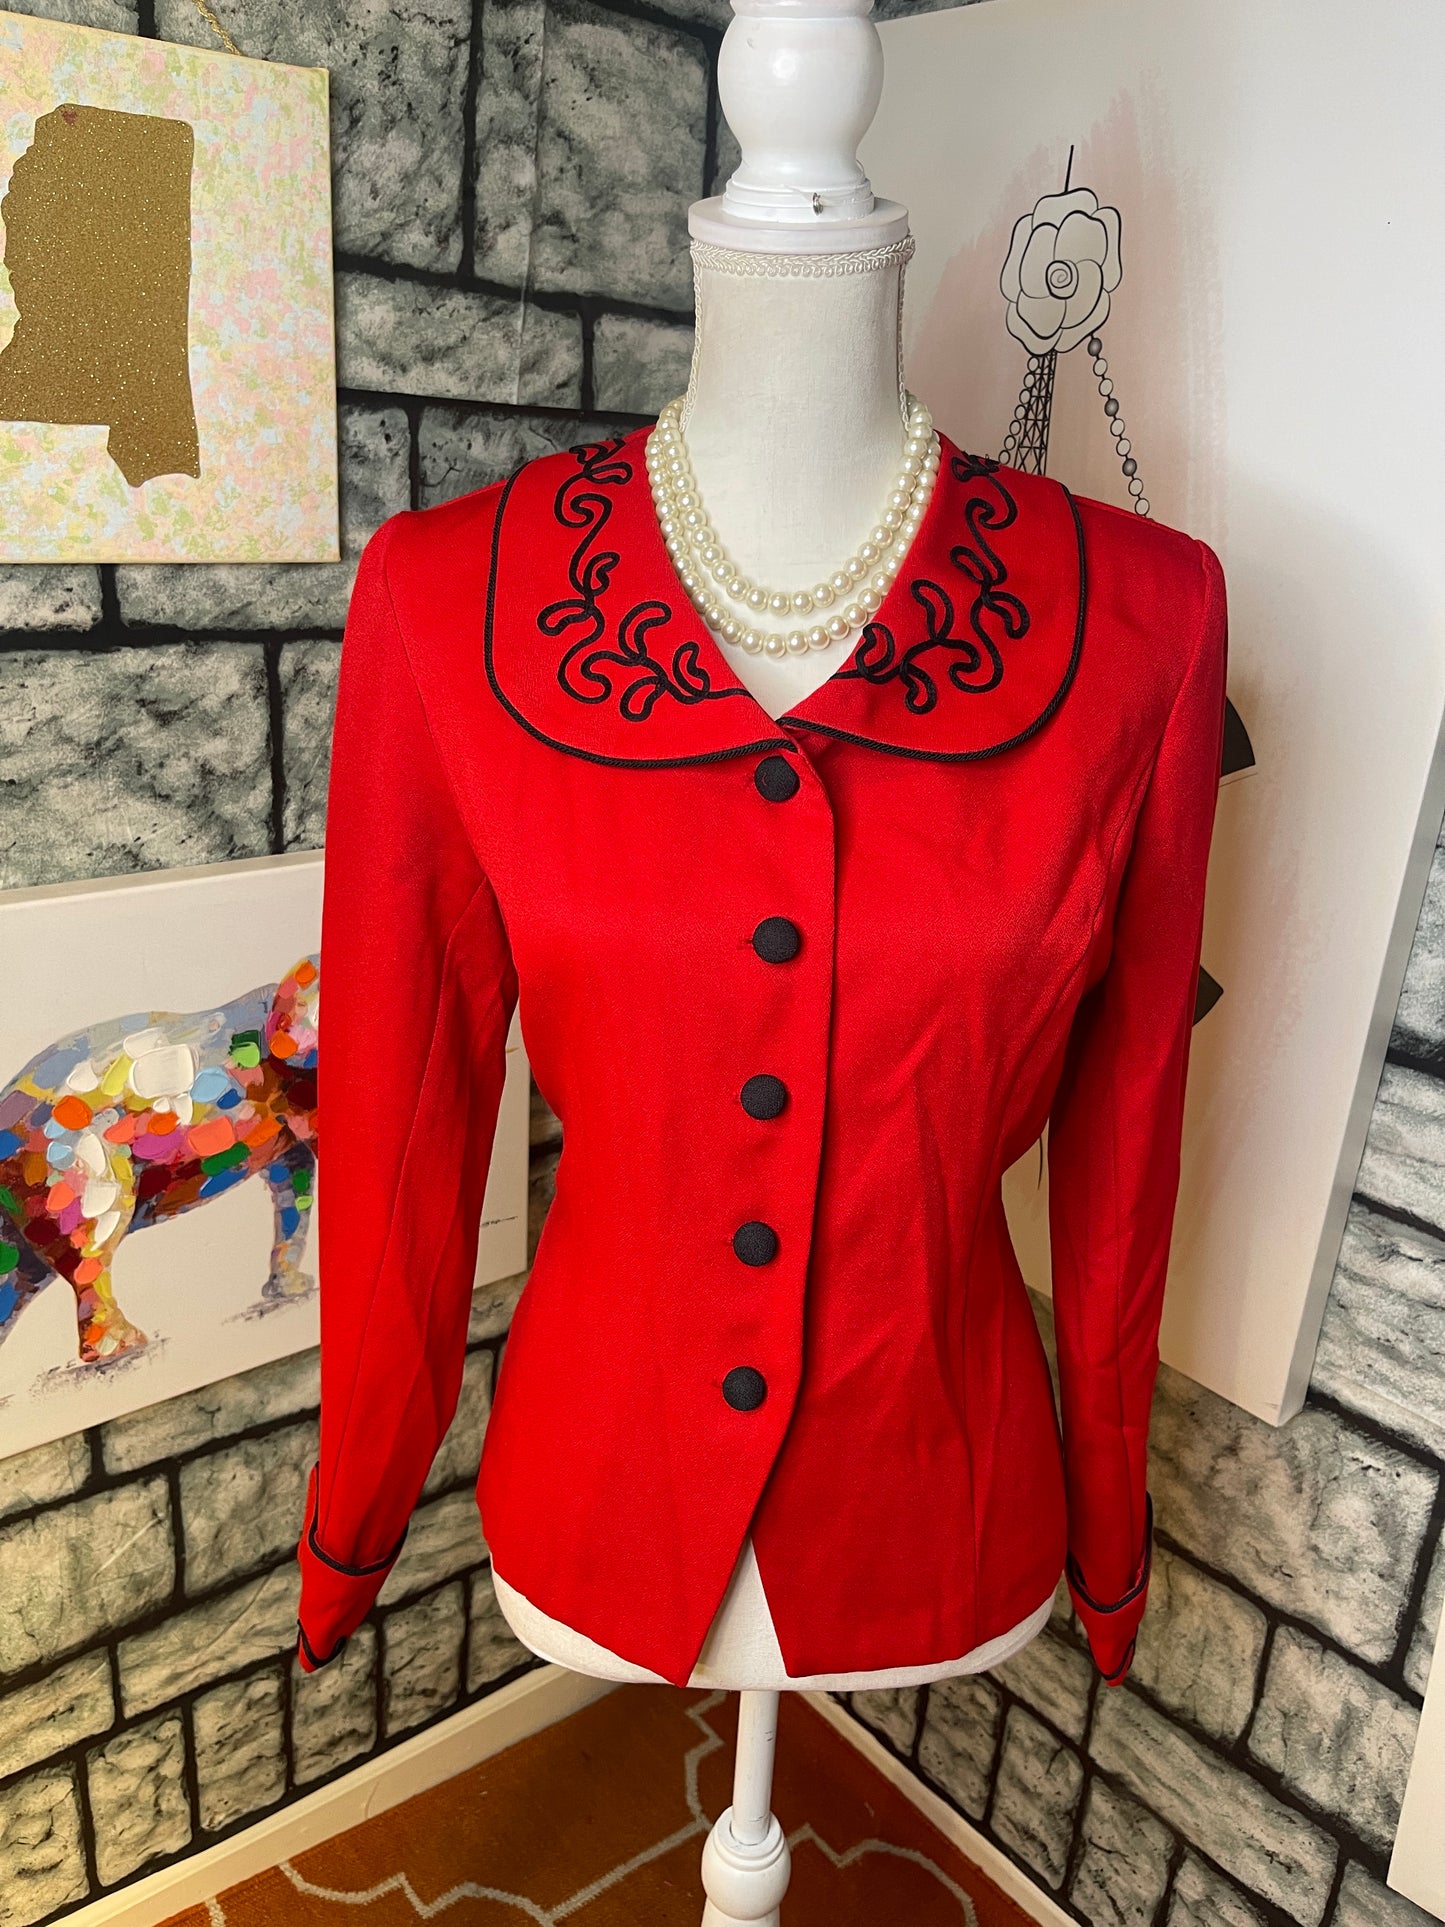 Wear abouts red blazer blouse women sz 8